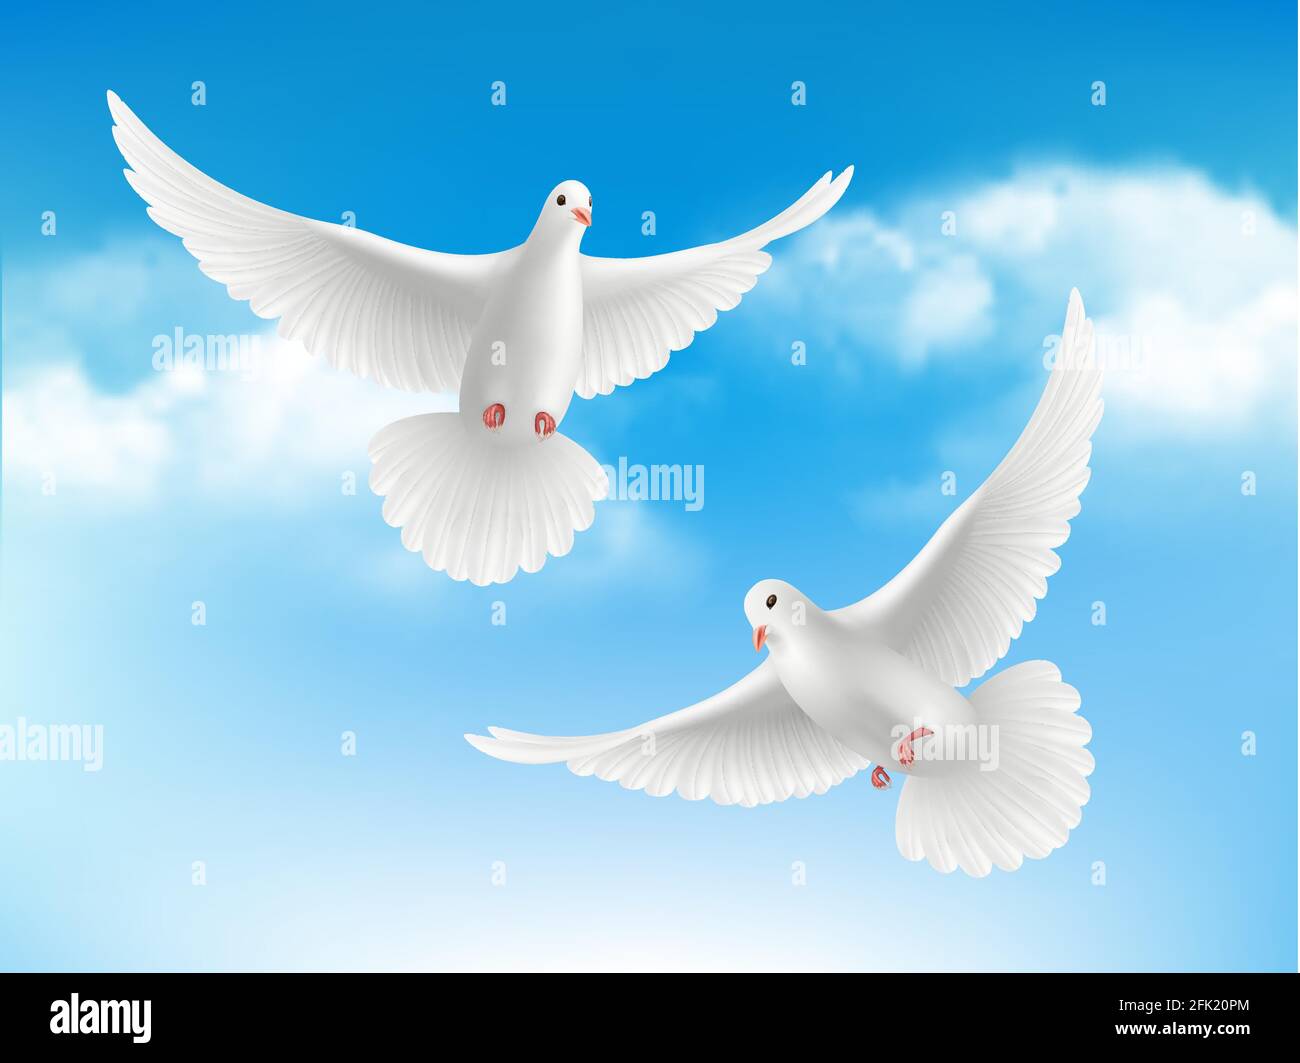 Vogel in Wolken. Fliegende weiße Tauben in blauem Himmel friedliches Religionskonzept mit realistischem Vogelvektorhintergrund Stock Vektor